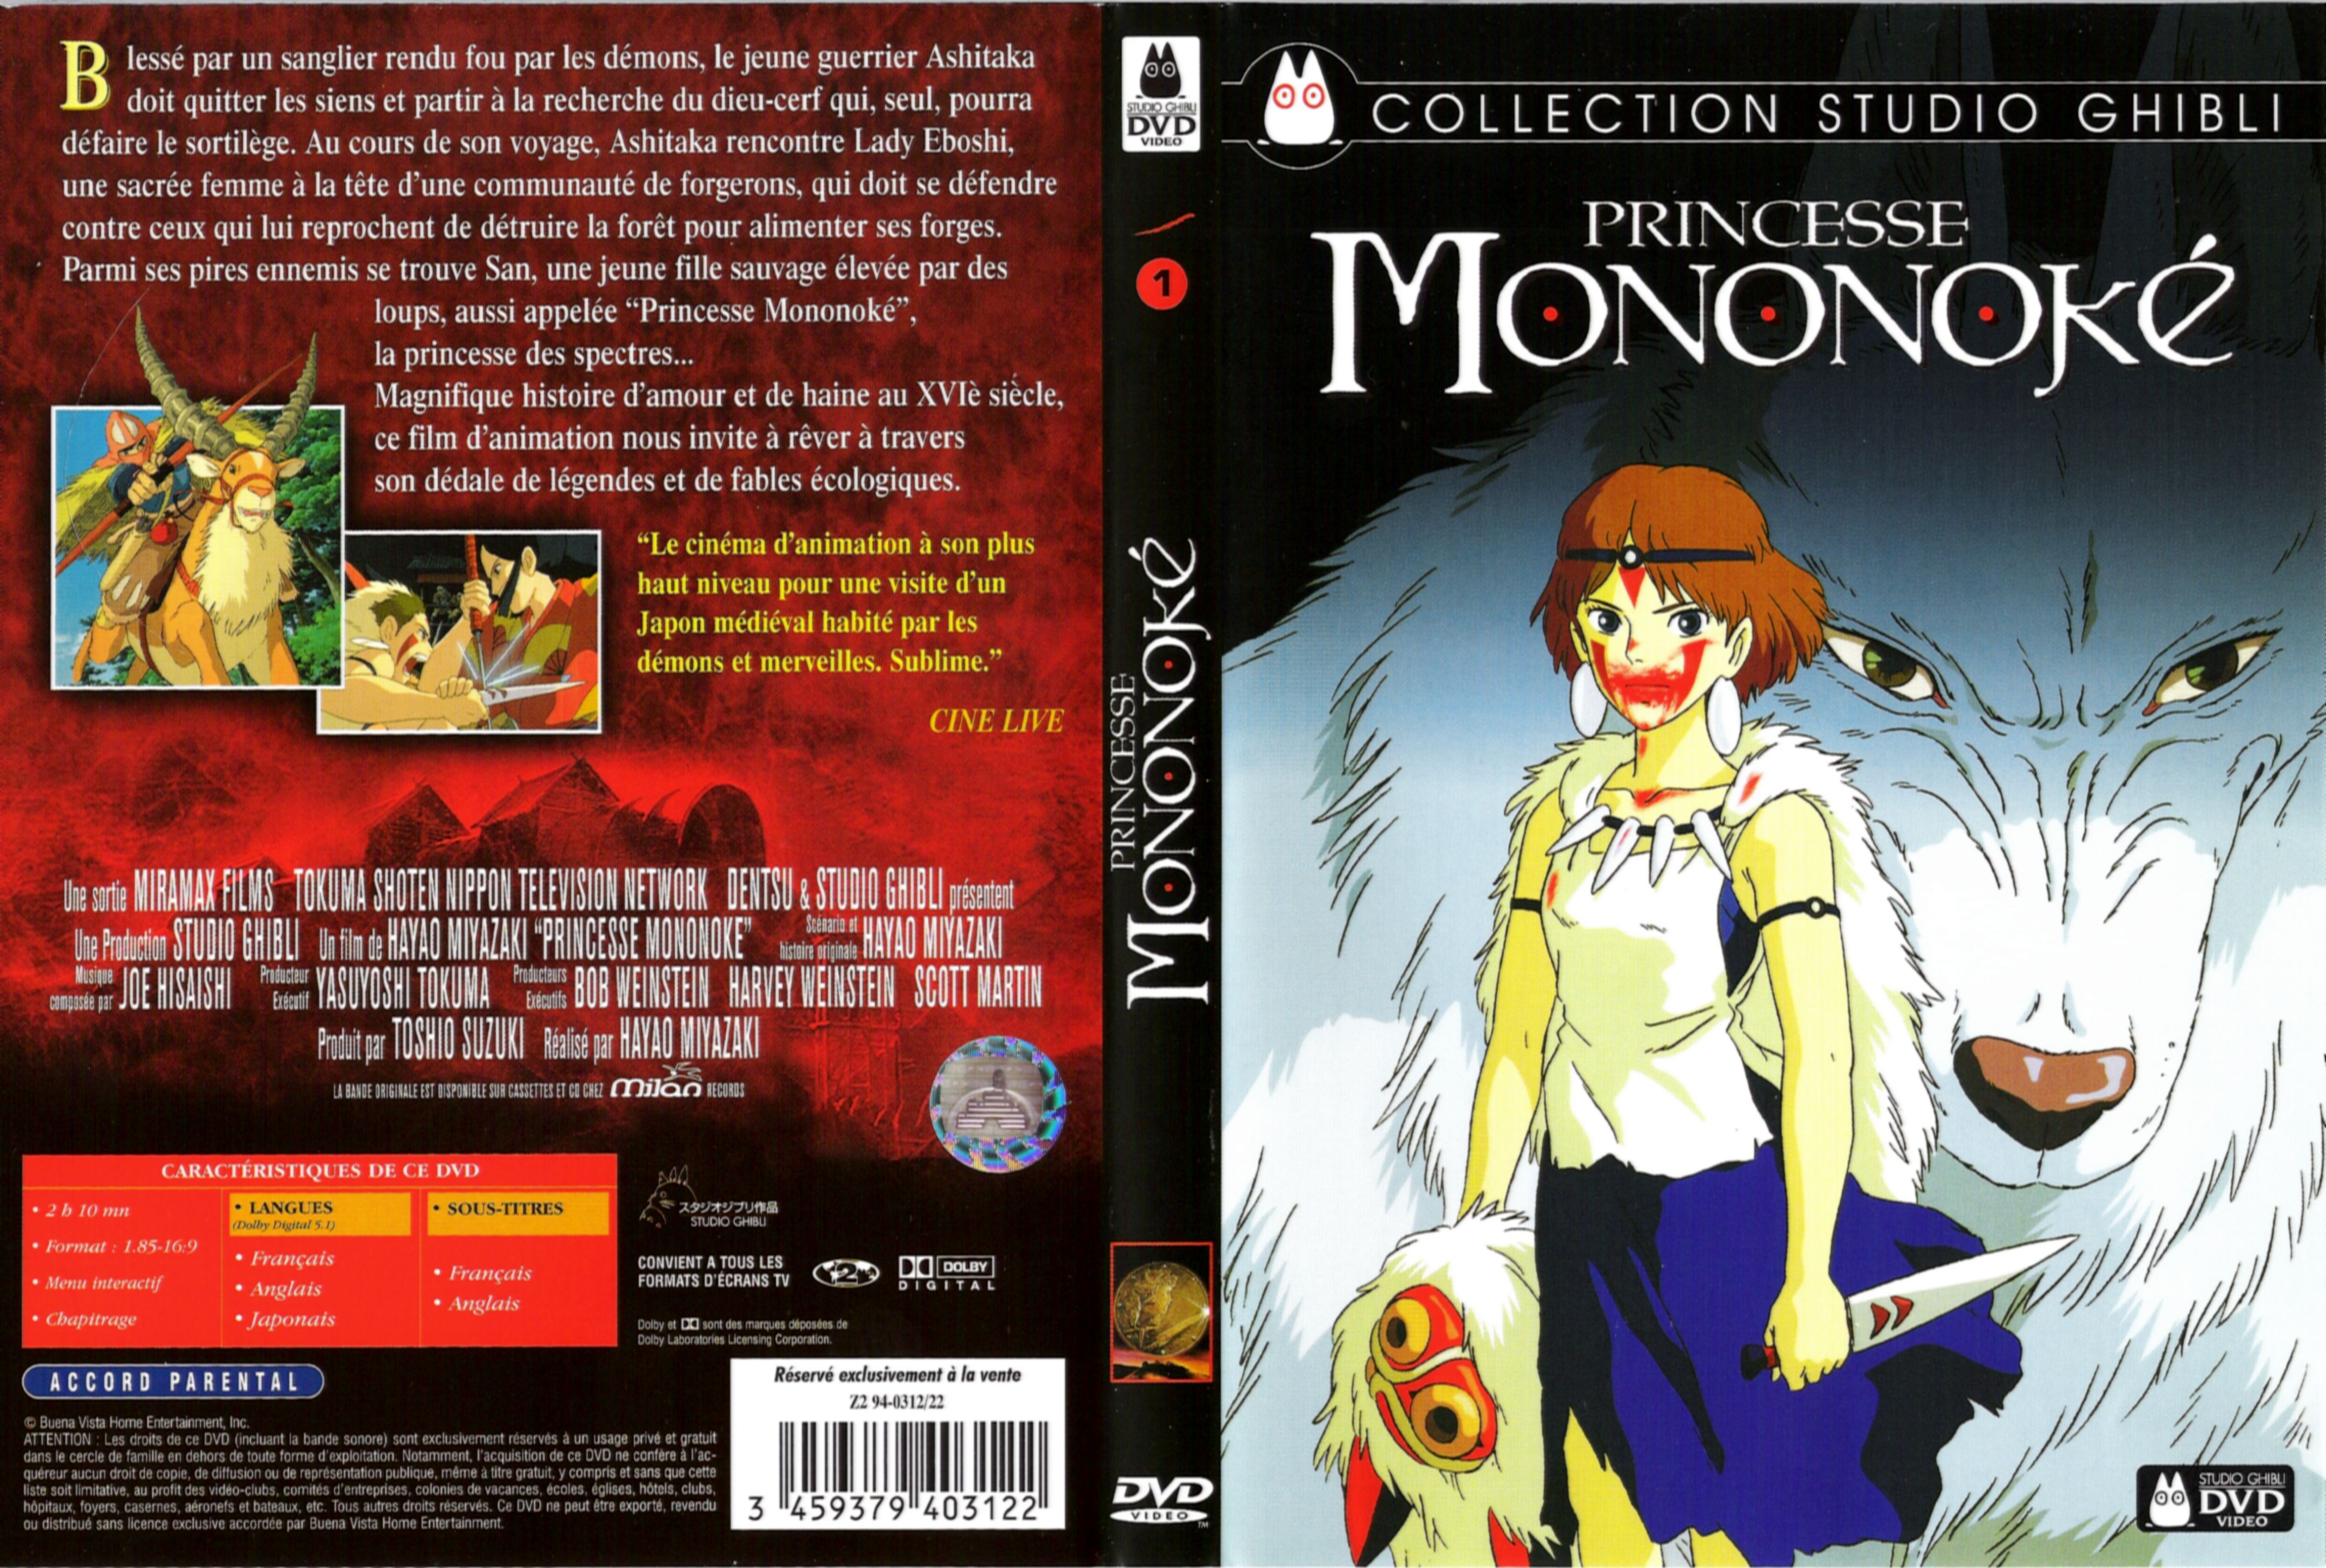 Jaquette DVD Princesse Mononok v2